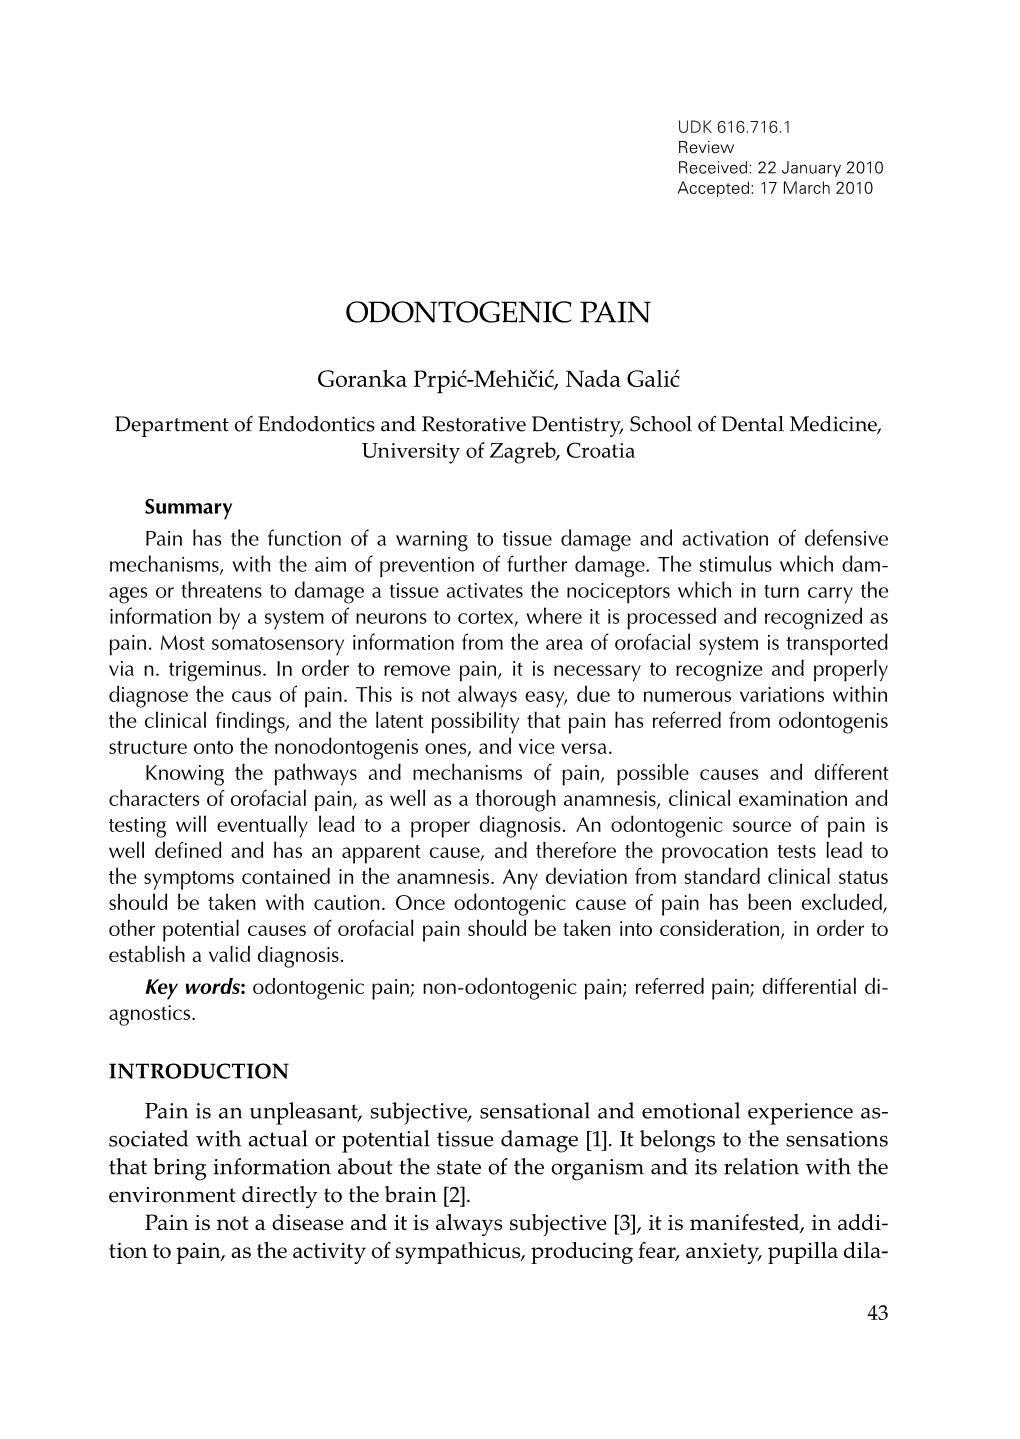 Odontogenic Pain